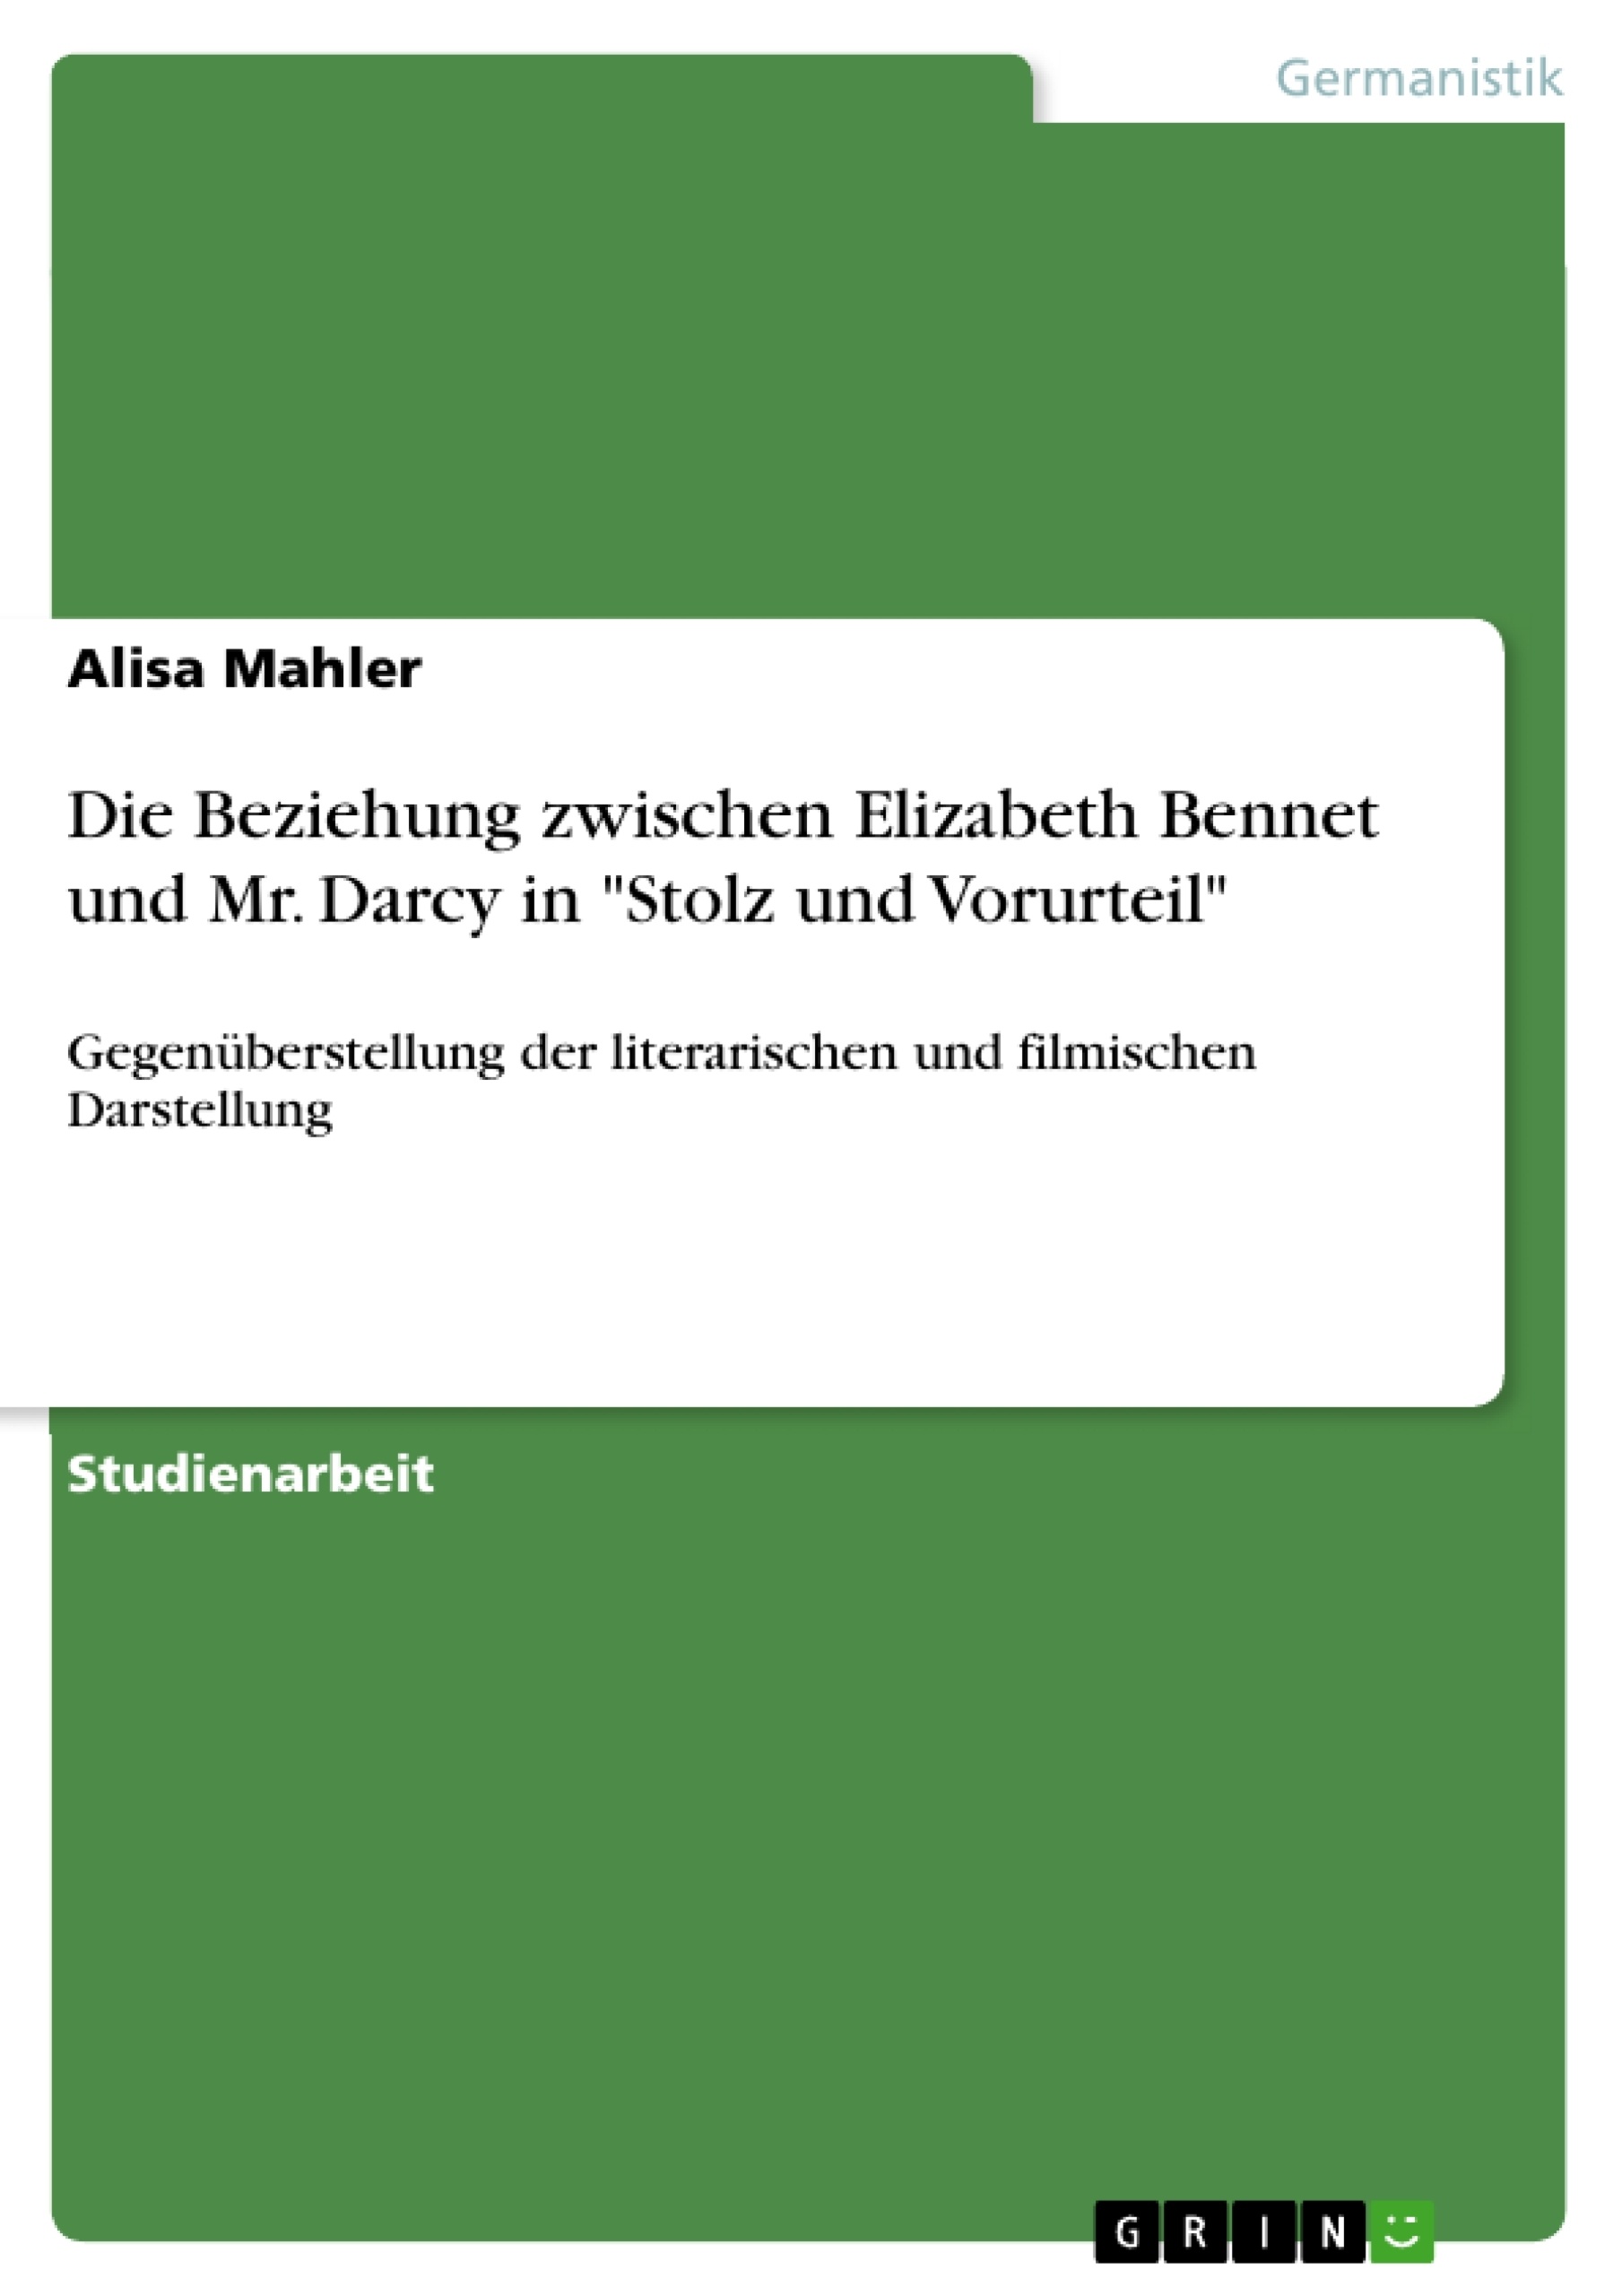 Título: Die Beziehung zwischen Elizabeth Bennet und Mr. Darcy in "Stolz und Vorurteil"